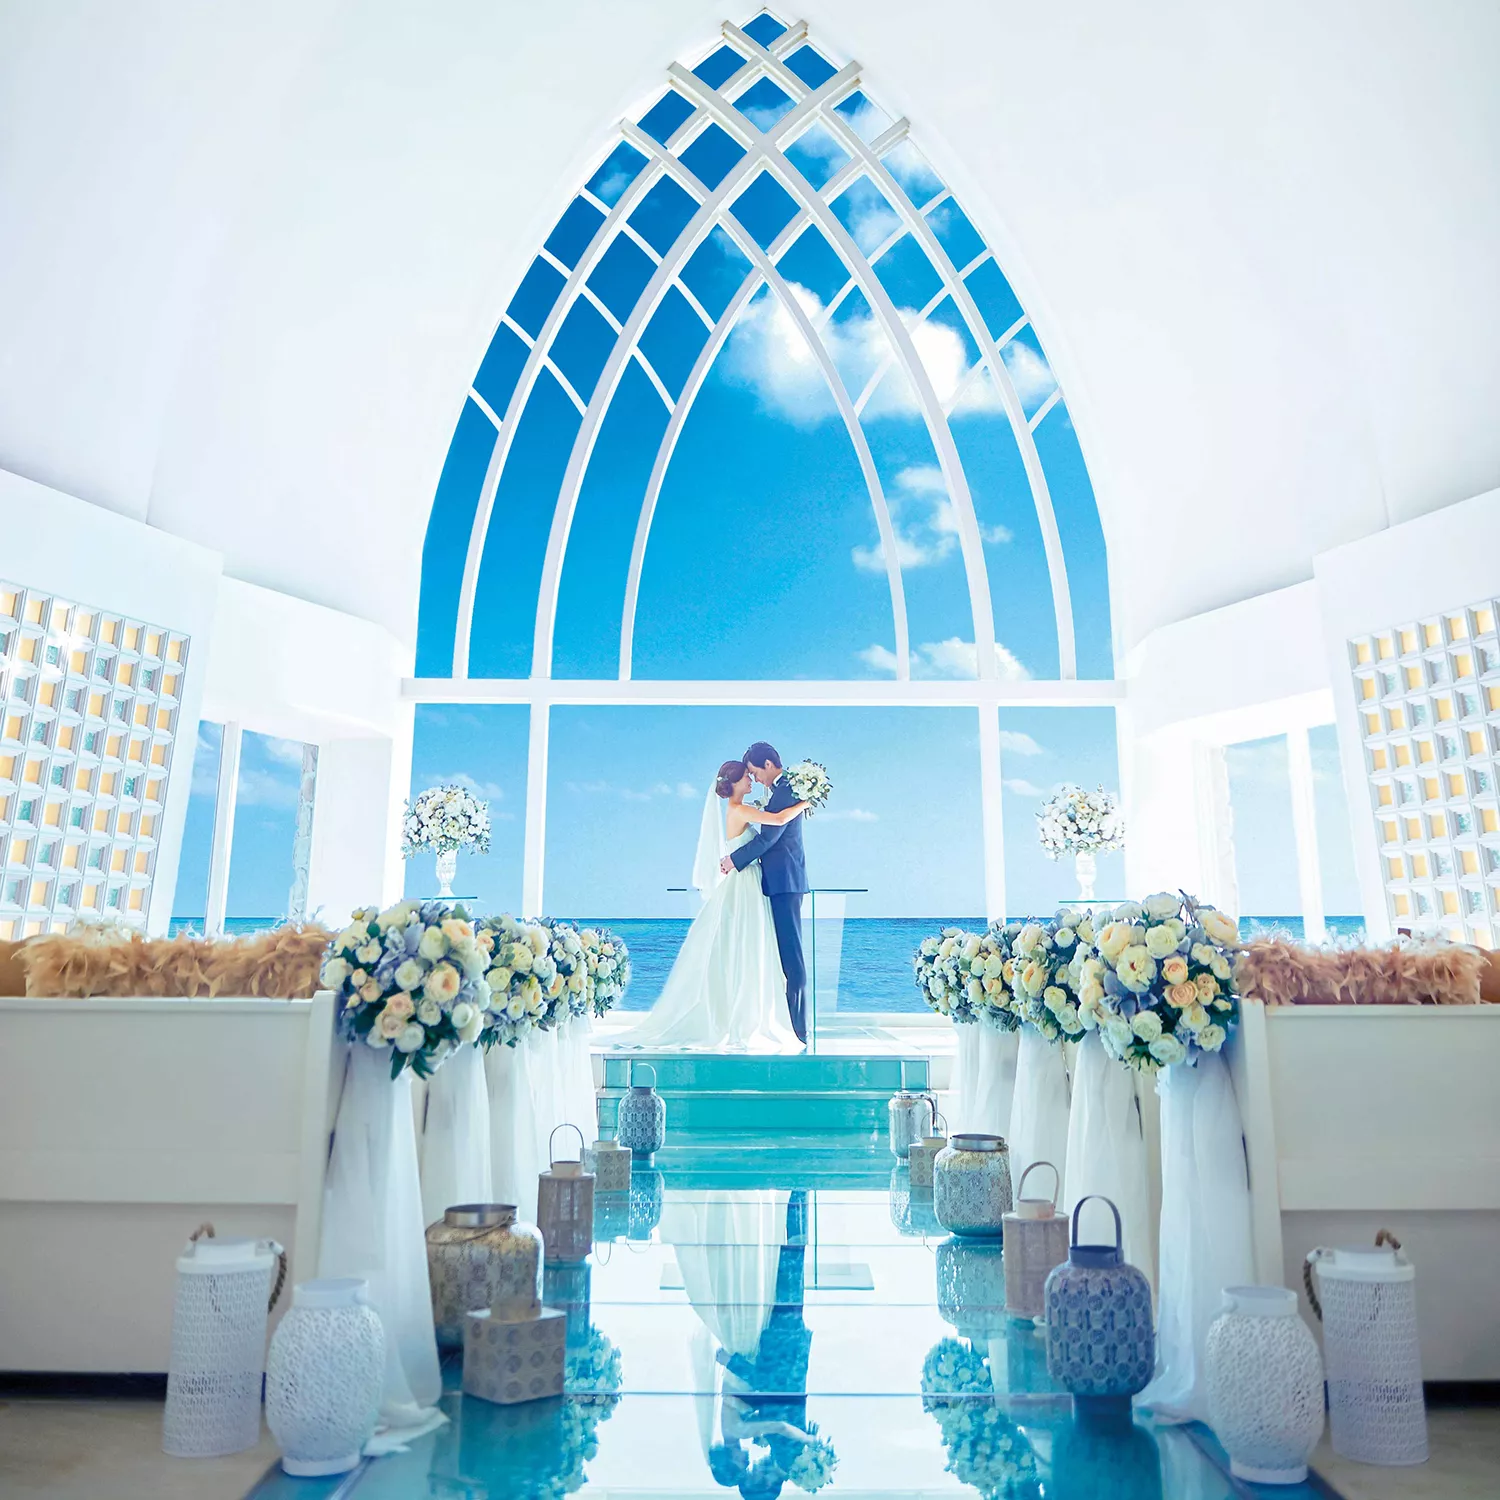 沖繩婚禮會有不含機加酒的基本婚禮包套。